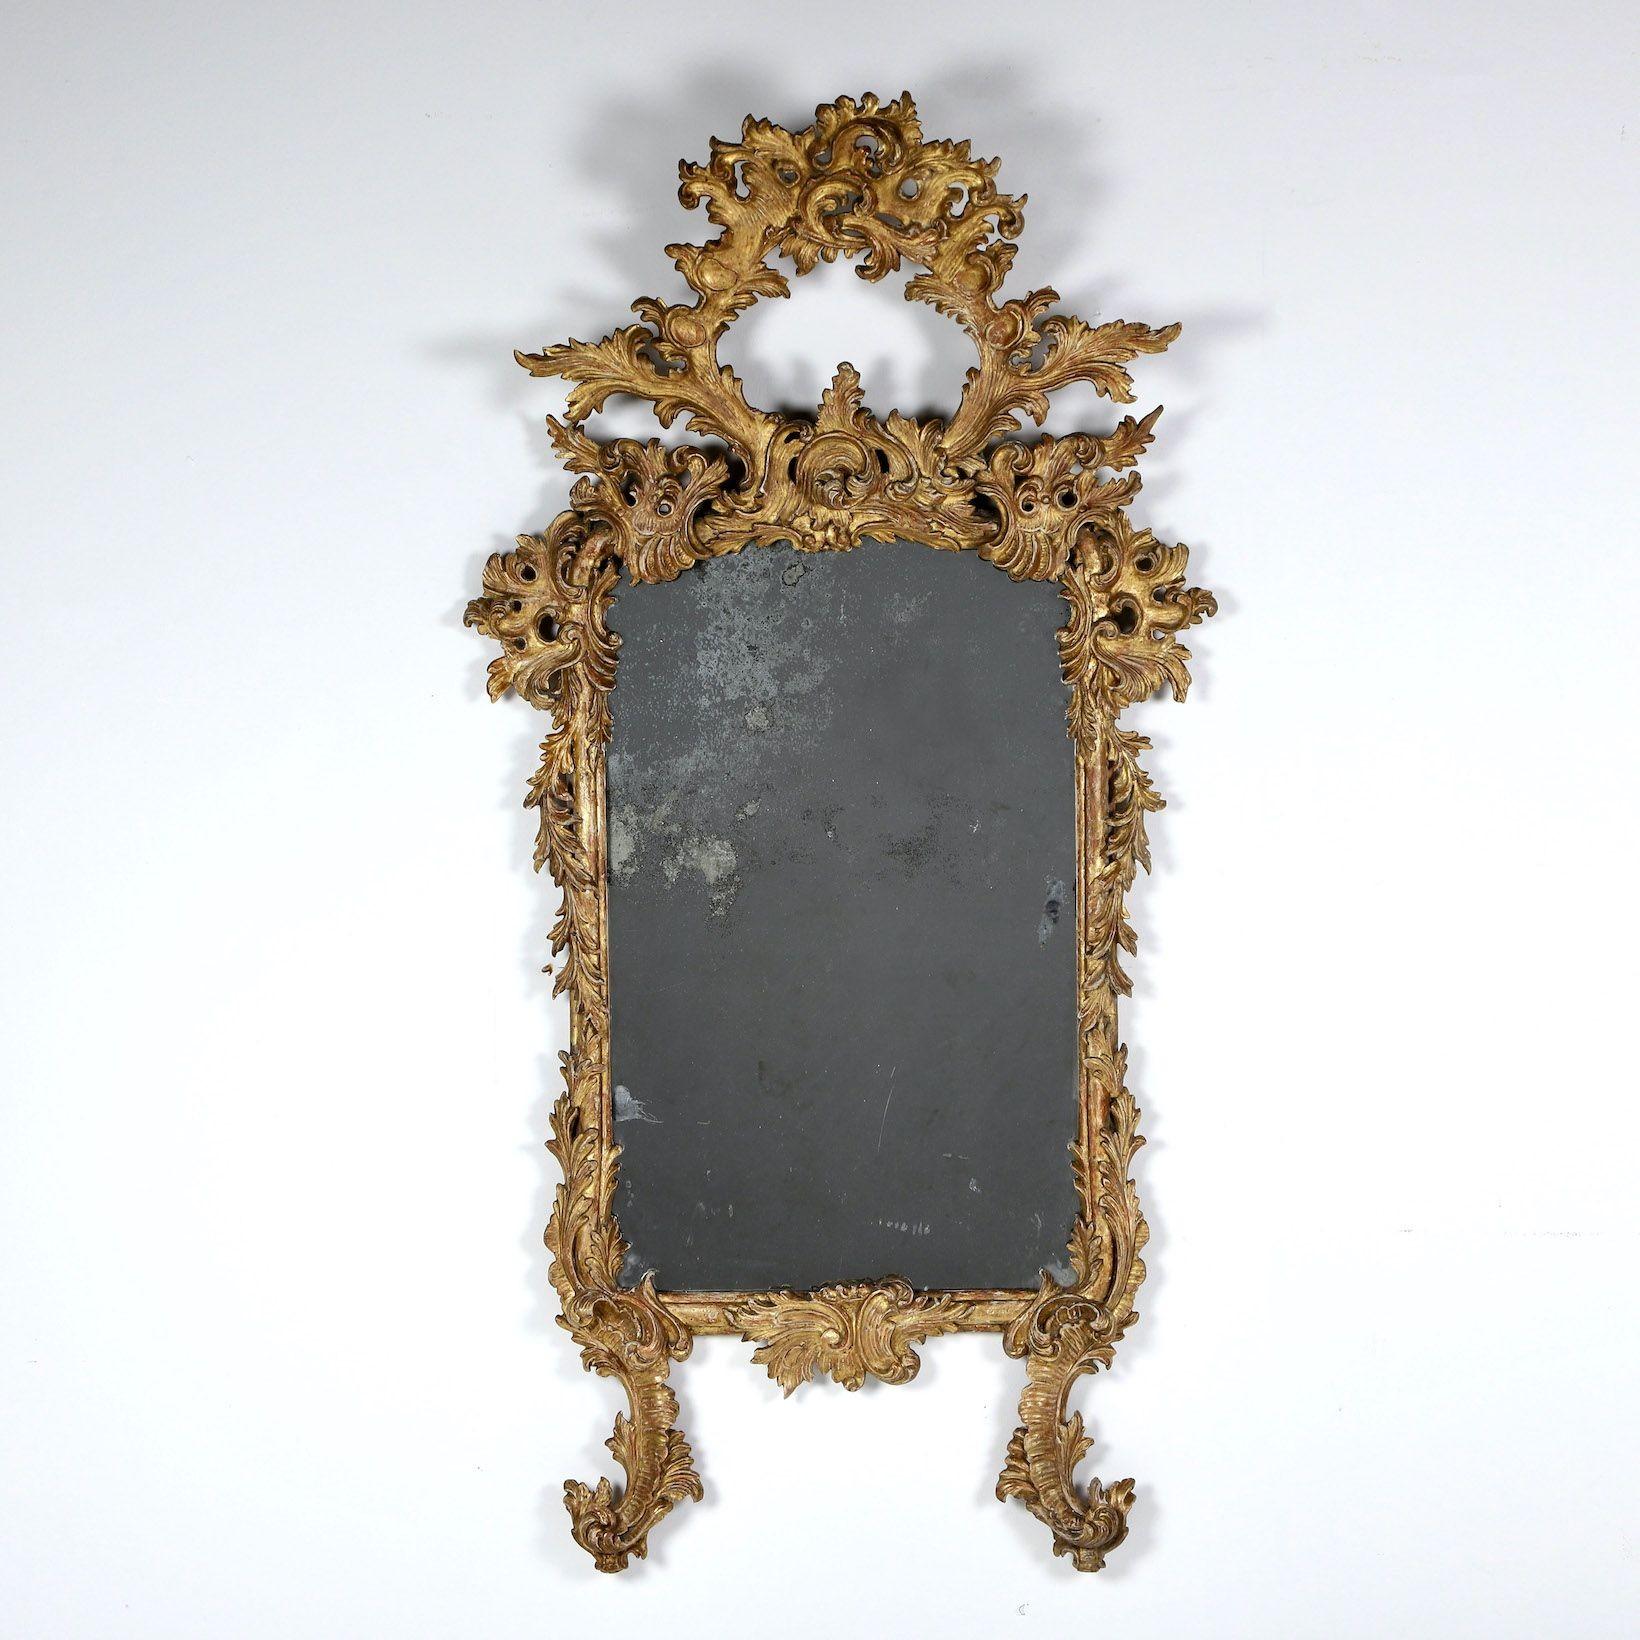 Feiner, schön gealterter, originaler Vergoldungsspiegel mit originaler Spiegelplatte im Stil des Rokoko mit fließendem, symmetrischem Blattmotiv, um 1820. Elegante Form, in Abschnitten geschnitzt.

Das Rokoko folgte auf das Barock und wird oft als